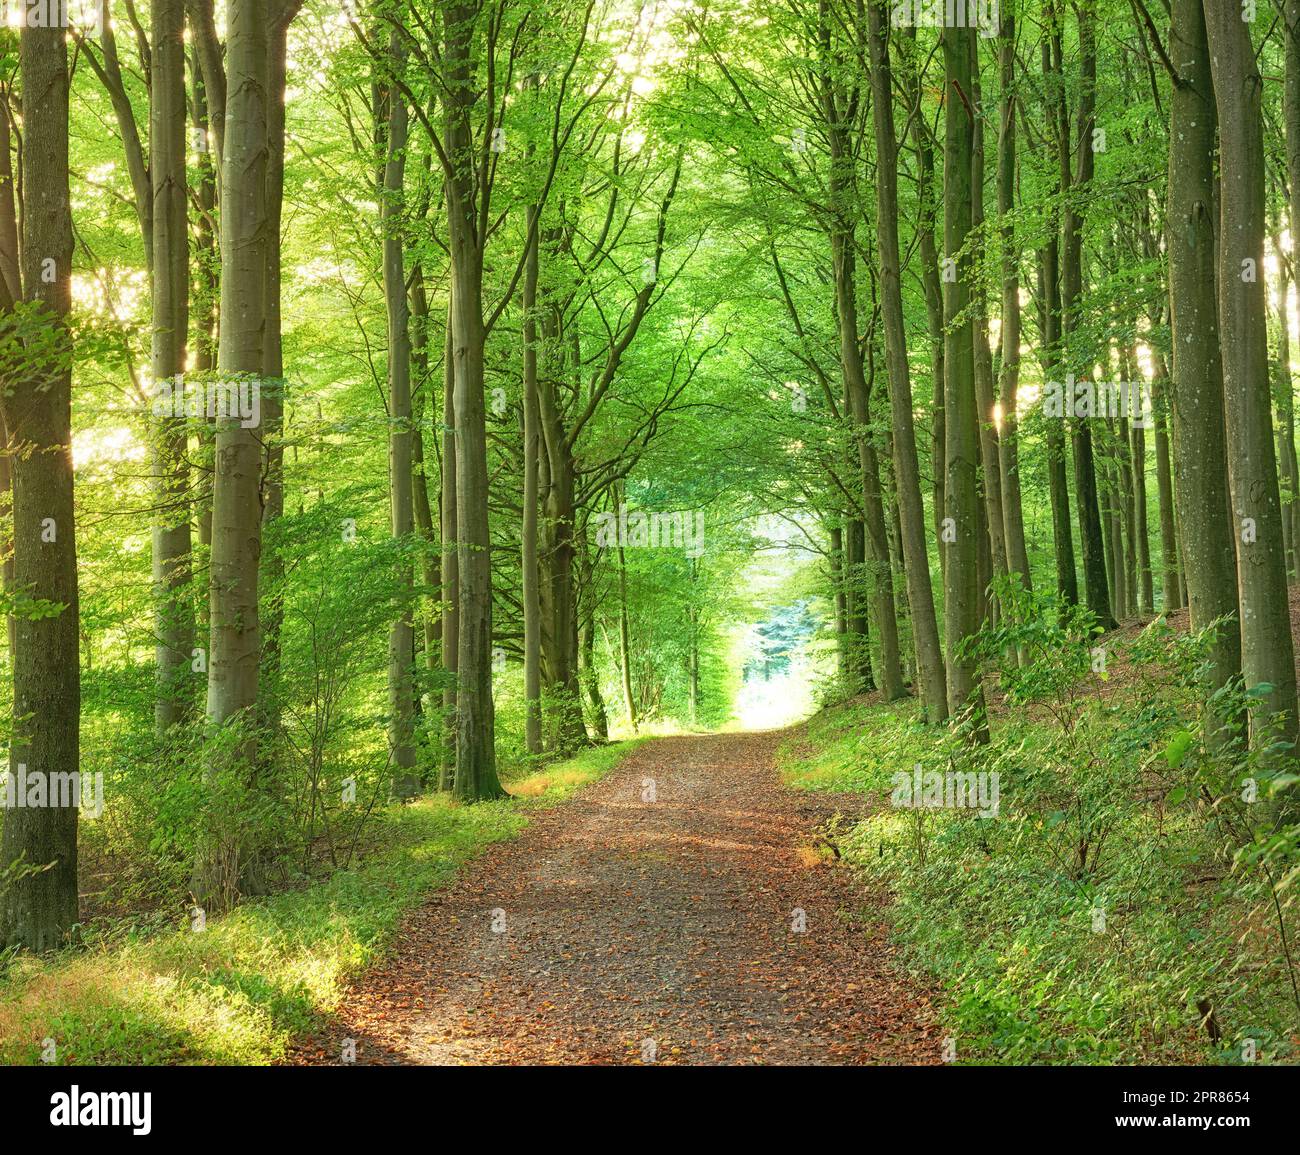 Ein üppiger grüner endloser Wald in den Wäldern an einem Sommertag. Outdoor-Wanderweg in der Natur mit einer Öffnung mit hellem Licht. Wunderschöne Landschaft mit glänzendem Sonnenlicht am Anfang des Weges Stockfoto